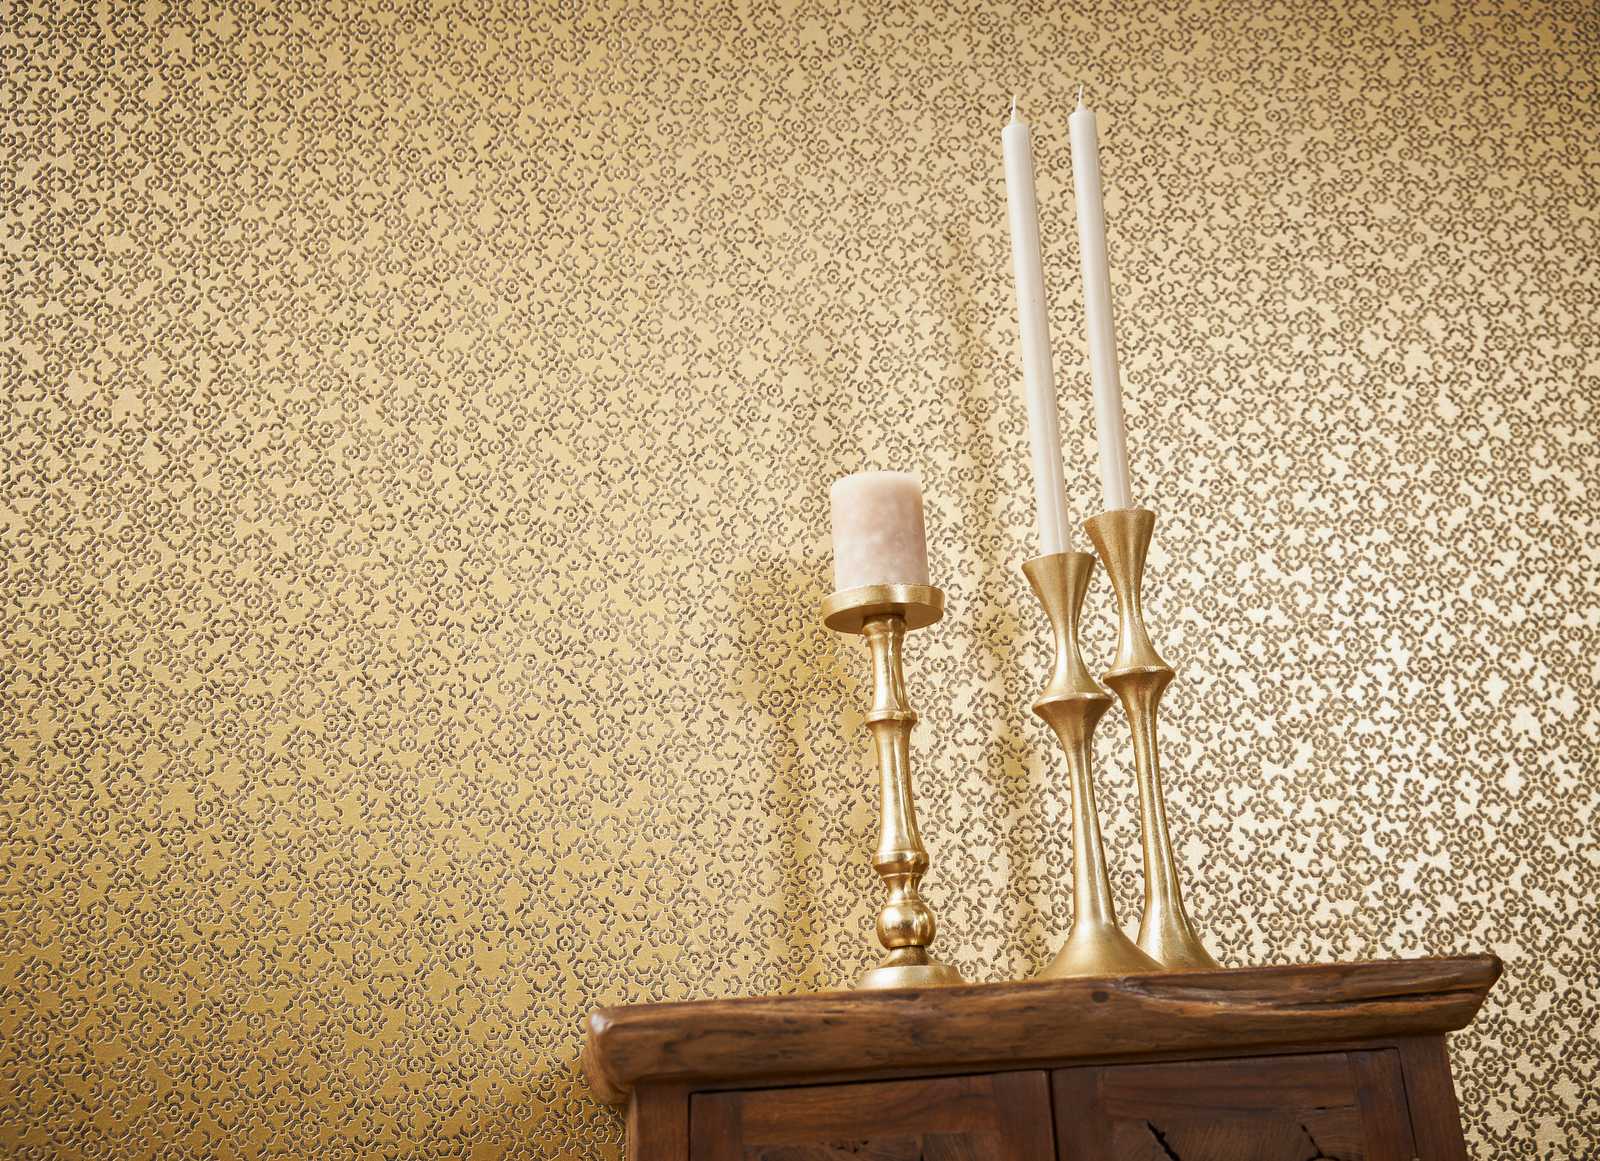             Gouden patroonbehang met 3D effect & metallic glans - Bruin, Geel, Metallic
        